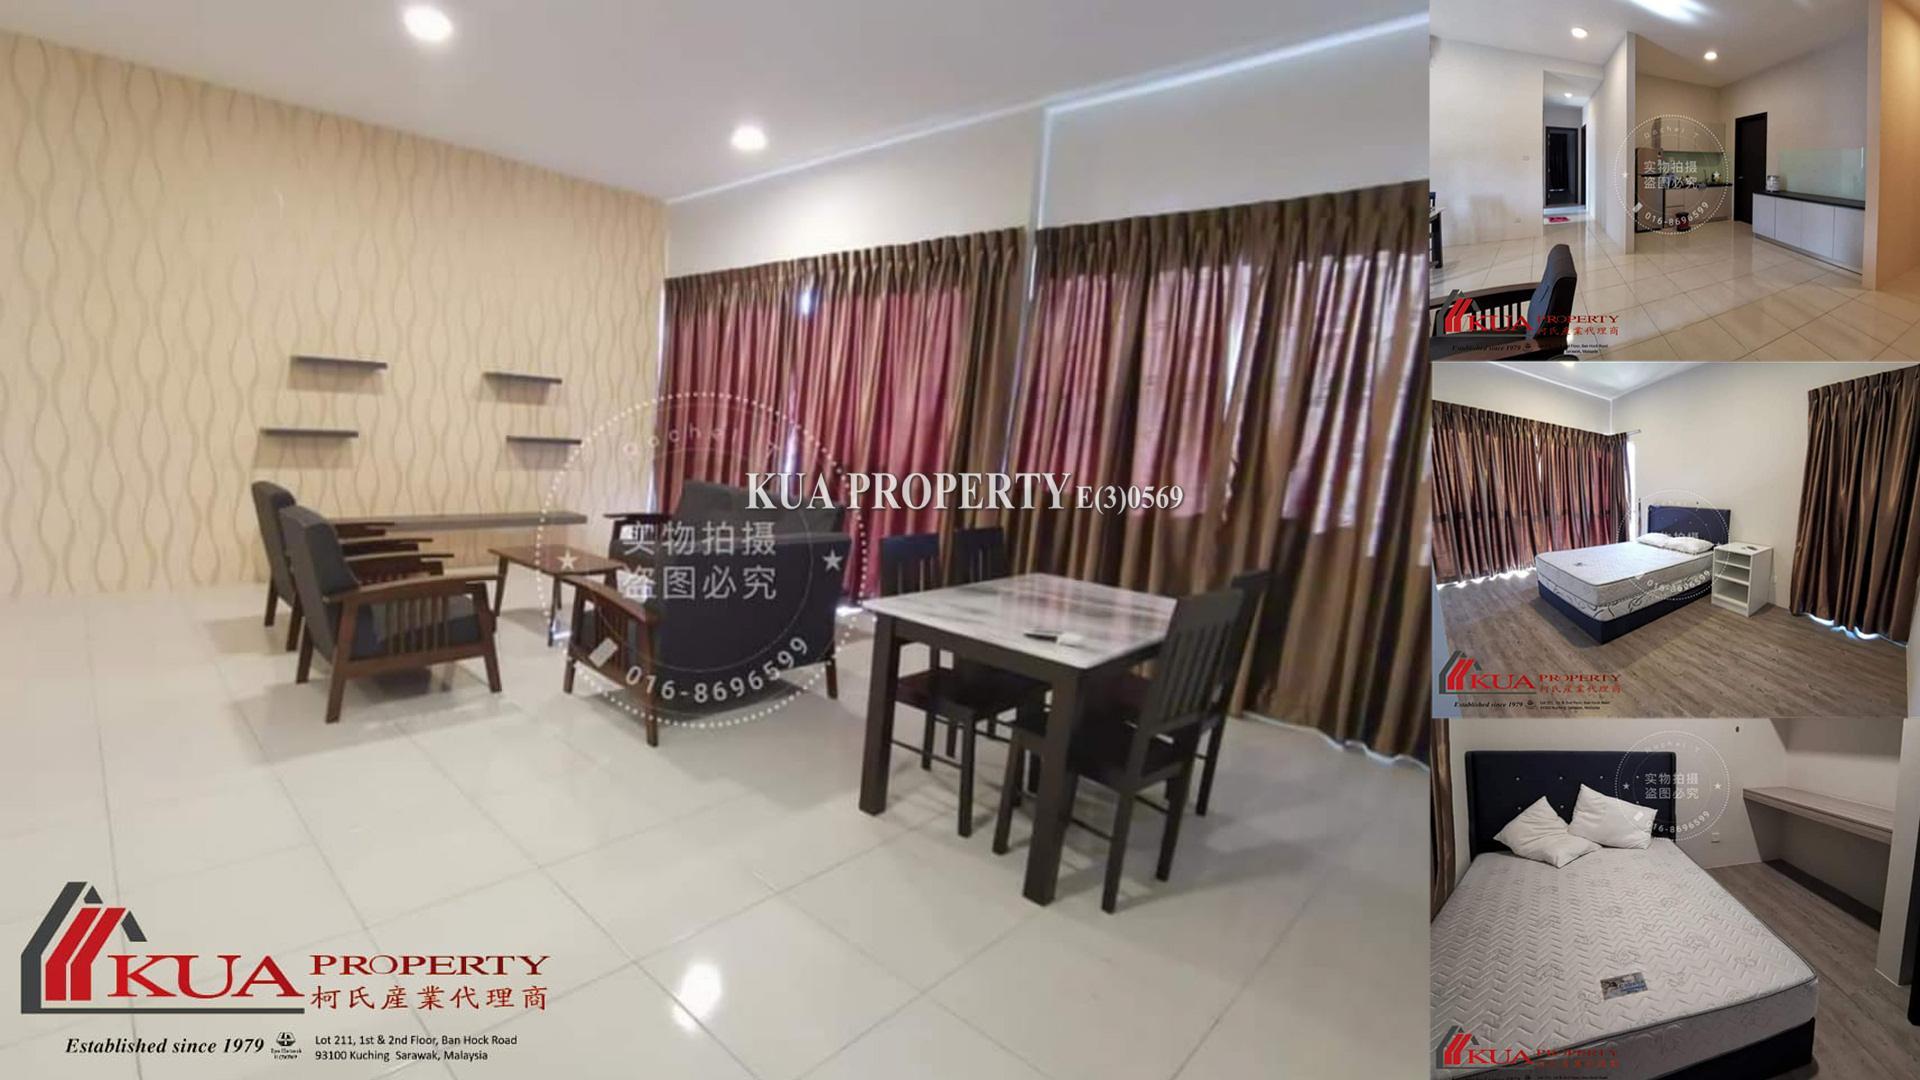 New Double Storey Corner Terrace House For Sale! at Taman Kalien, Jalan Sungai Tapang